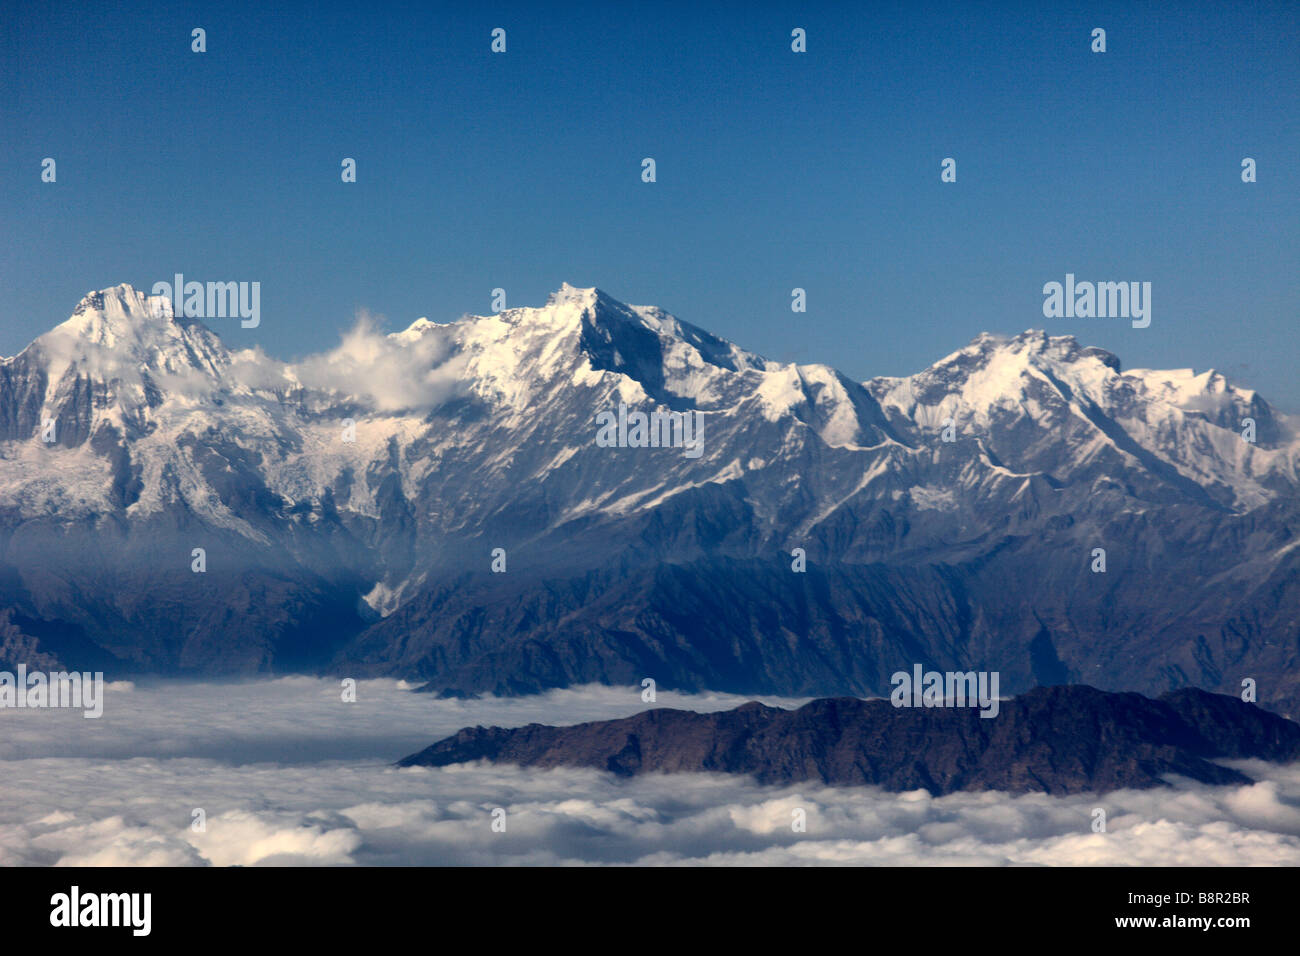 Nepal Himalayas aerial view Stock Photo